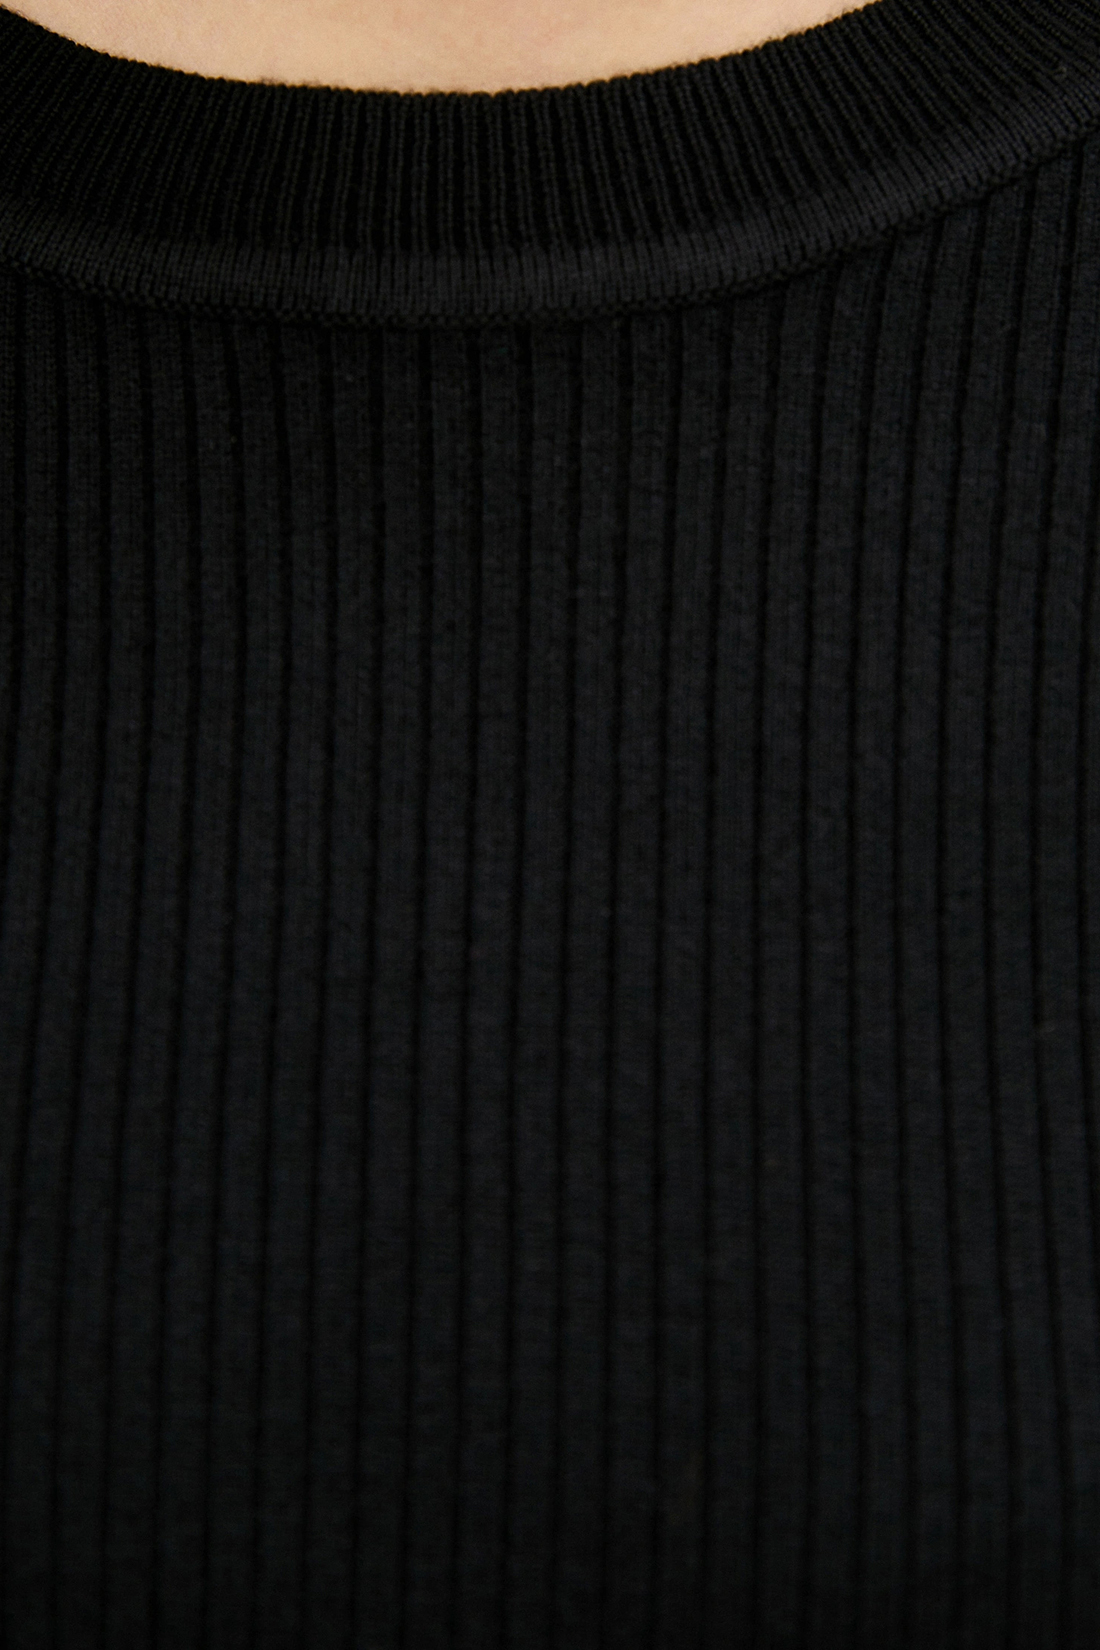 Джемпер в рубчик (арт. baon B130609), размер L, цвет черный Джемпер в рубчик (арт. baon B130609) - фото 3